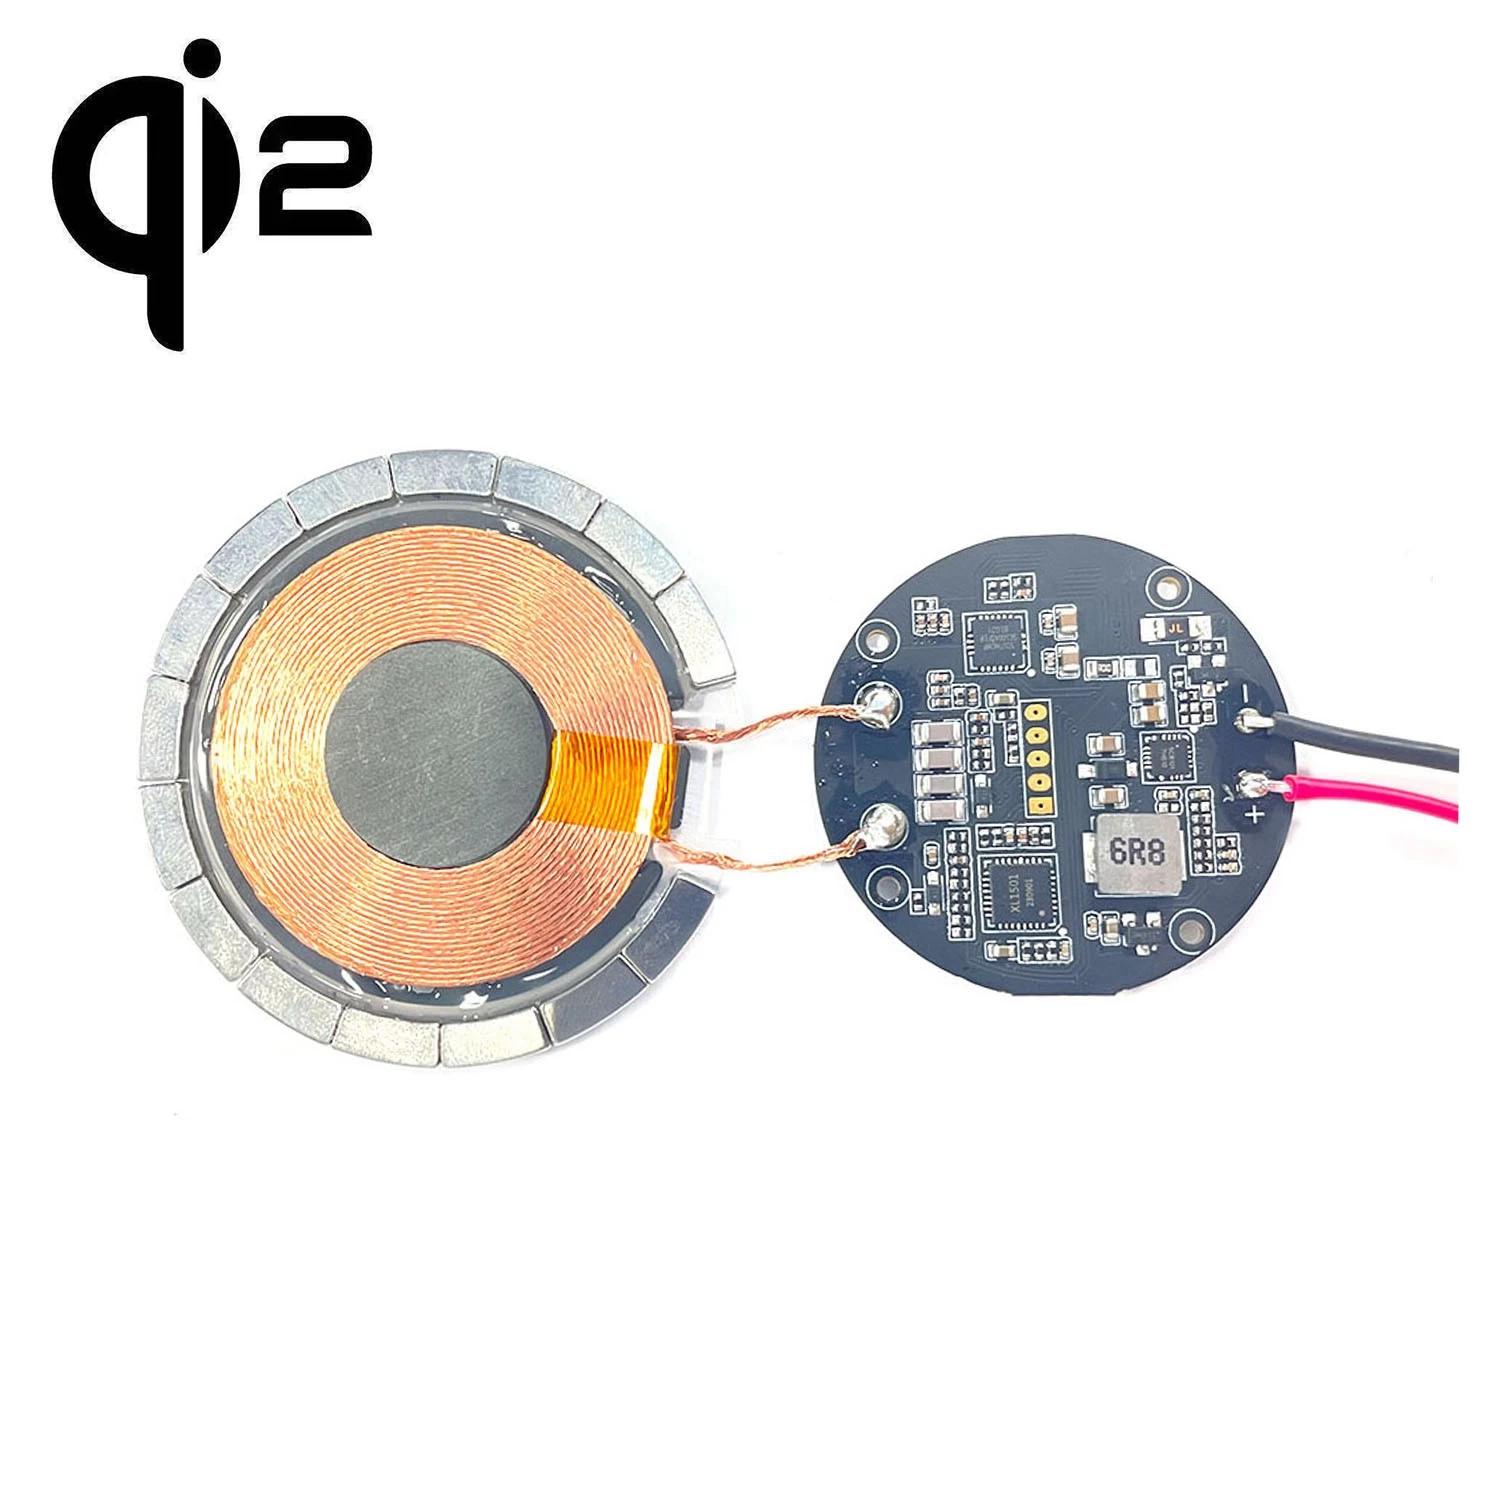 Cina qi2 MPP modulo di ricarica wireless veloce magnetico ricevitore trasmettitore magnete 15w veloce Qi2 QI MPP due personalizzazione modulo caricatore wireless magnetico produttore